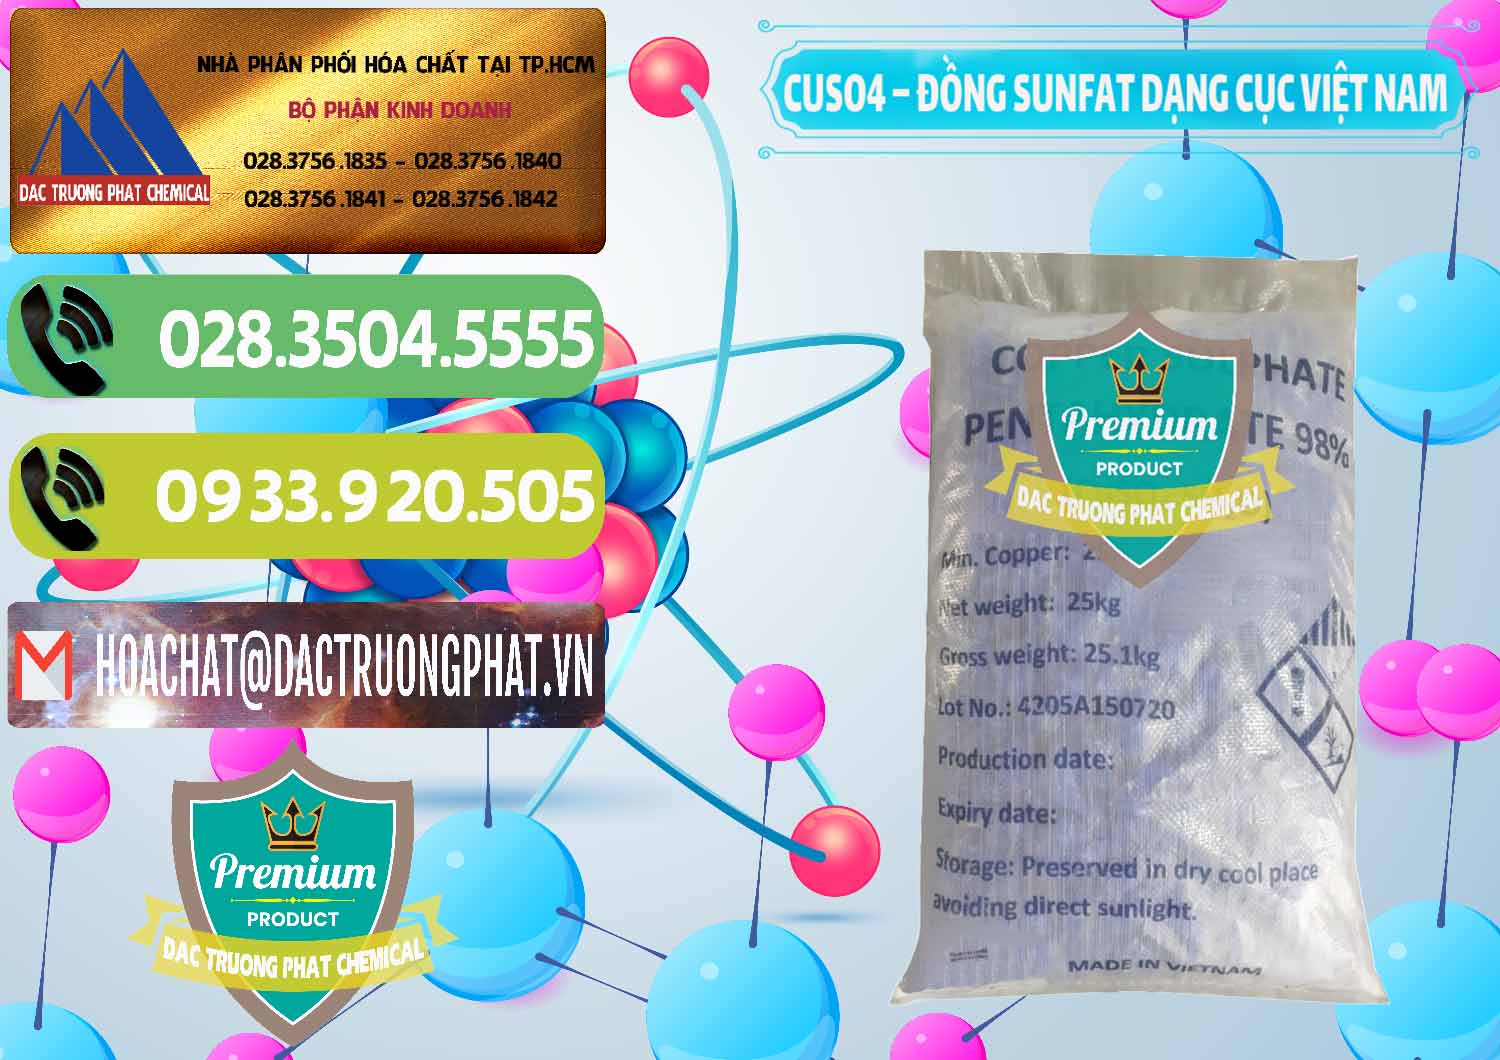 Nơi cung ứng - bán CUSO4 – Đồng Sunfat Dạng Cục Việt Nam - 0303 - Công ty chuyên cung cấp _ bán hóa chất tại TP.HCM - hoachatmientay.vn